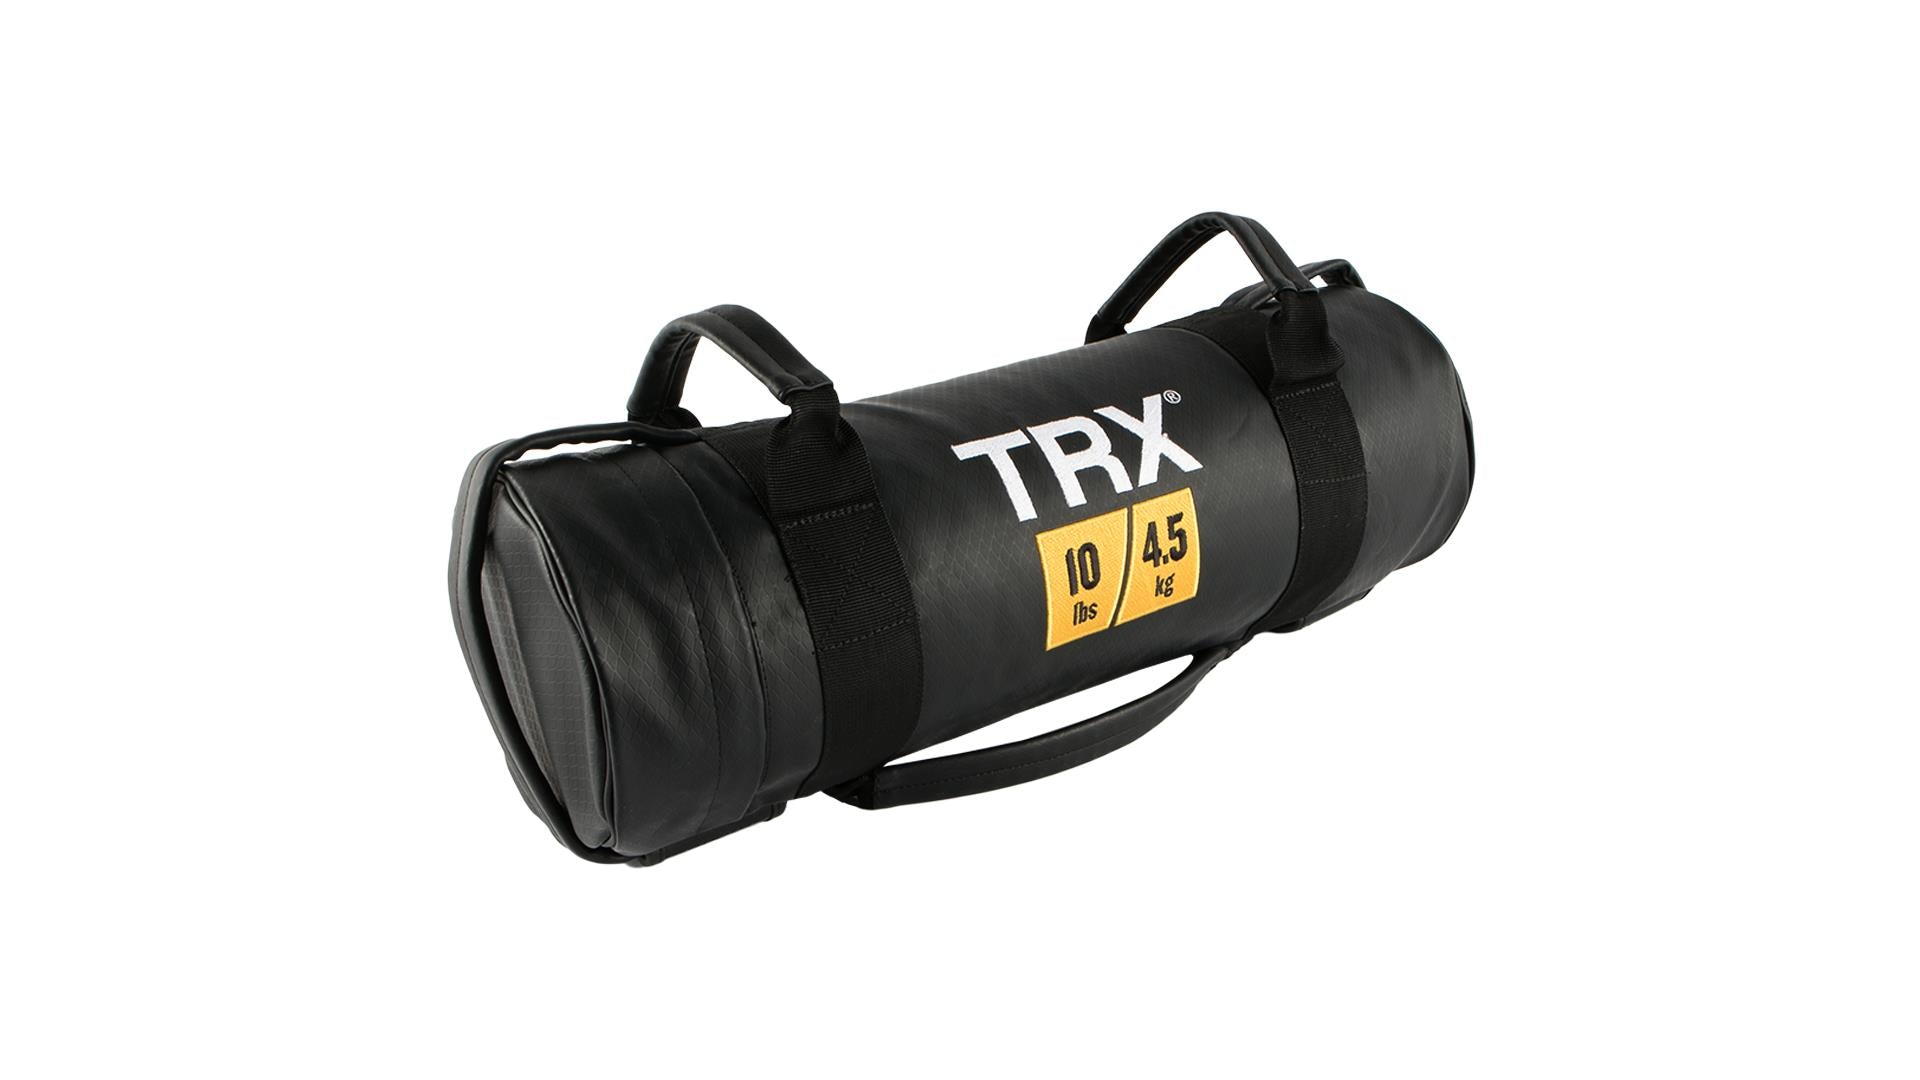 TRX Training Power Bag - 10 lbs